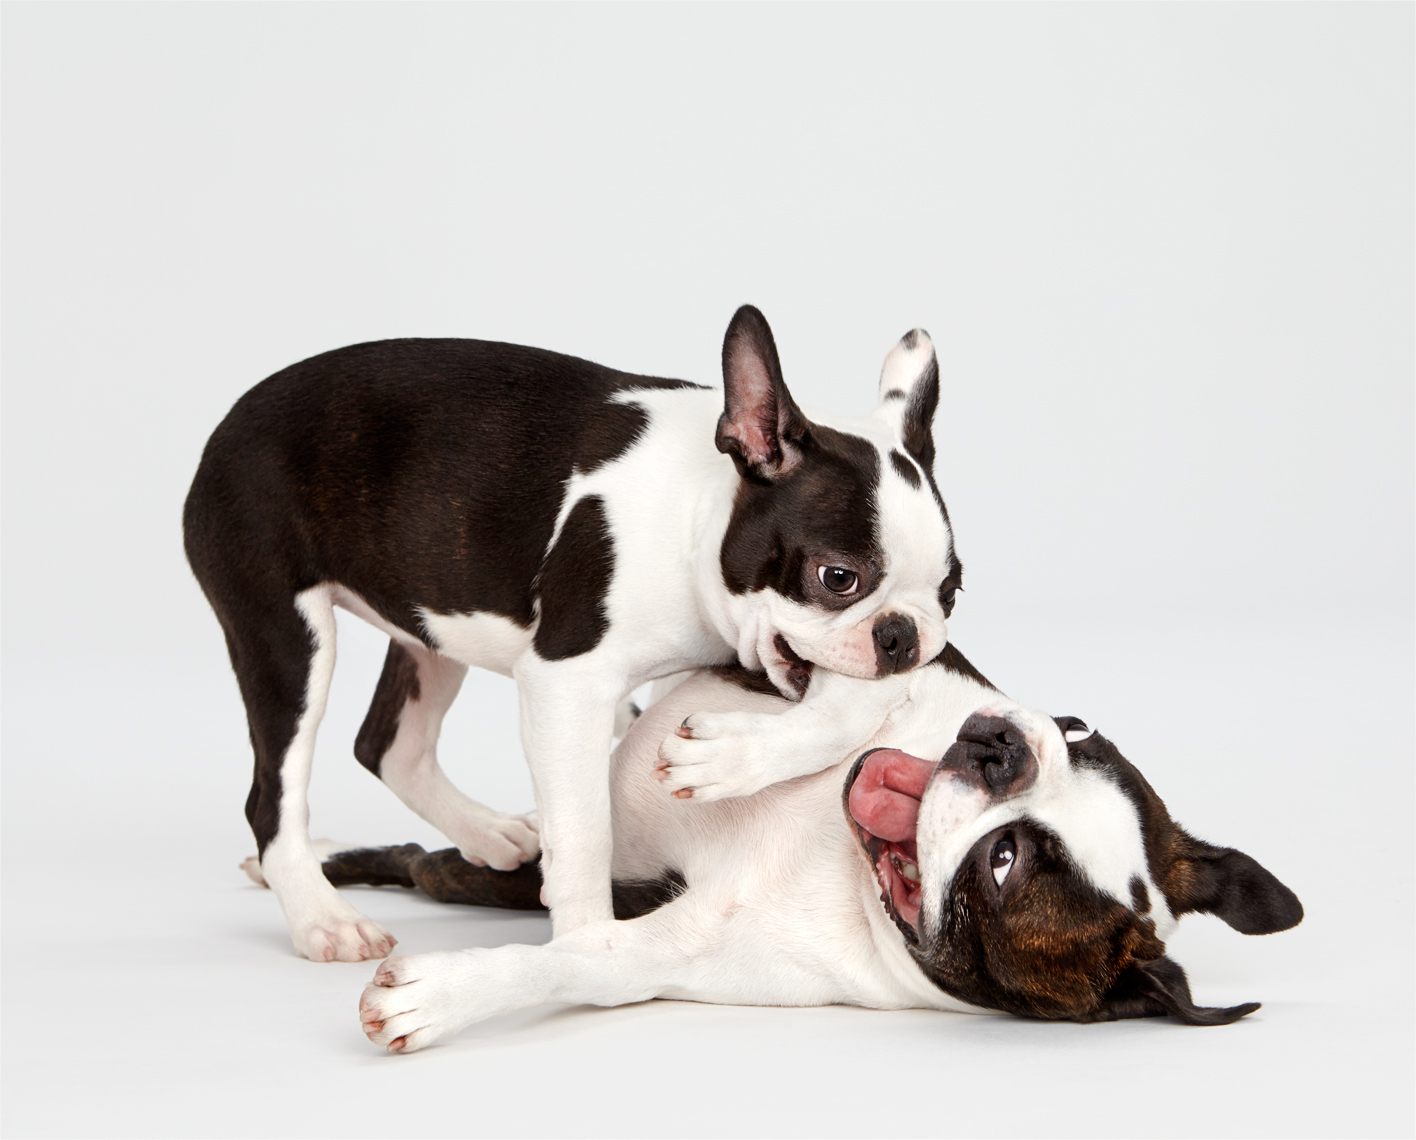 Boston Terrier puppy wrestling